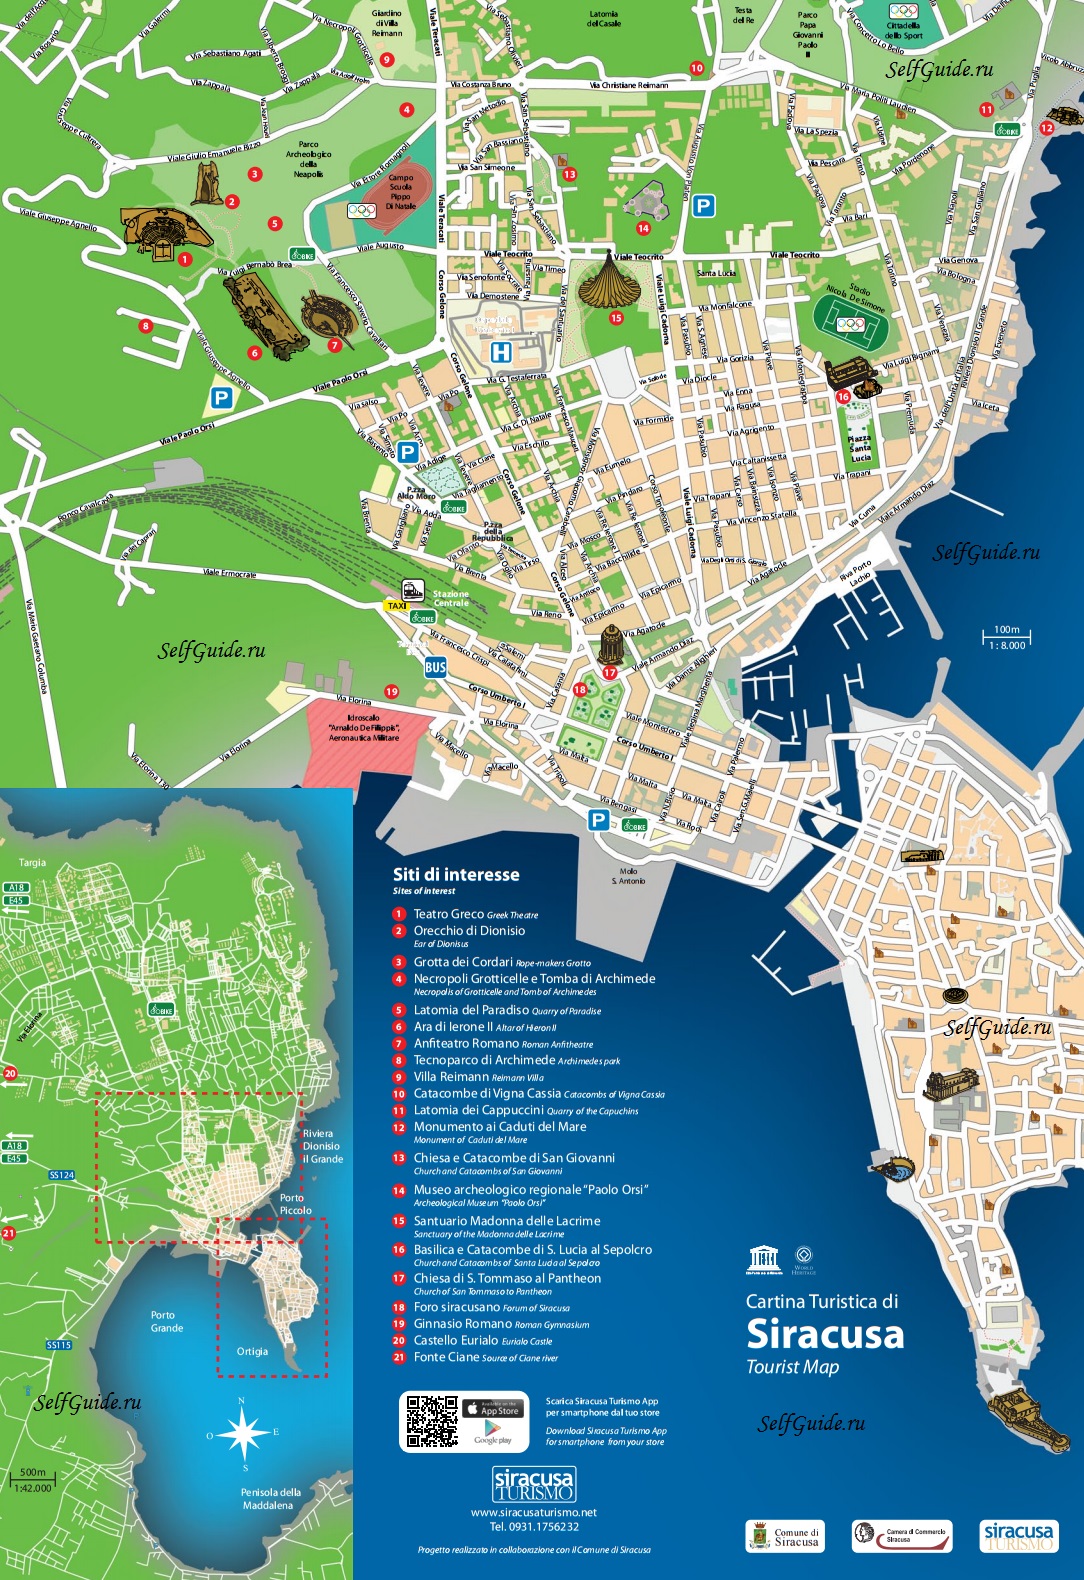 siracusa-map-full Сиракузы (Siracusa), Сицилия, Италия - достопримечательности, карта города, туристический маршрут. Путеводитель по городу, Сицилии и Италии. Что посмотреть